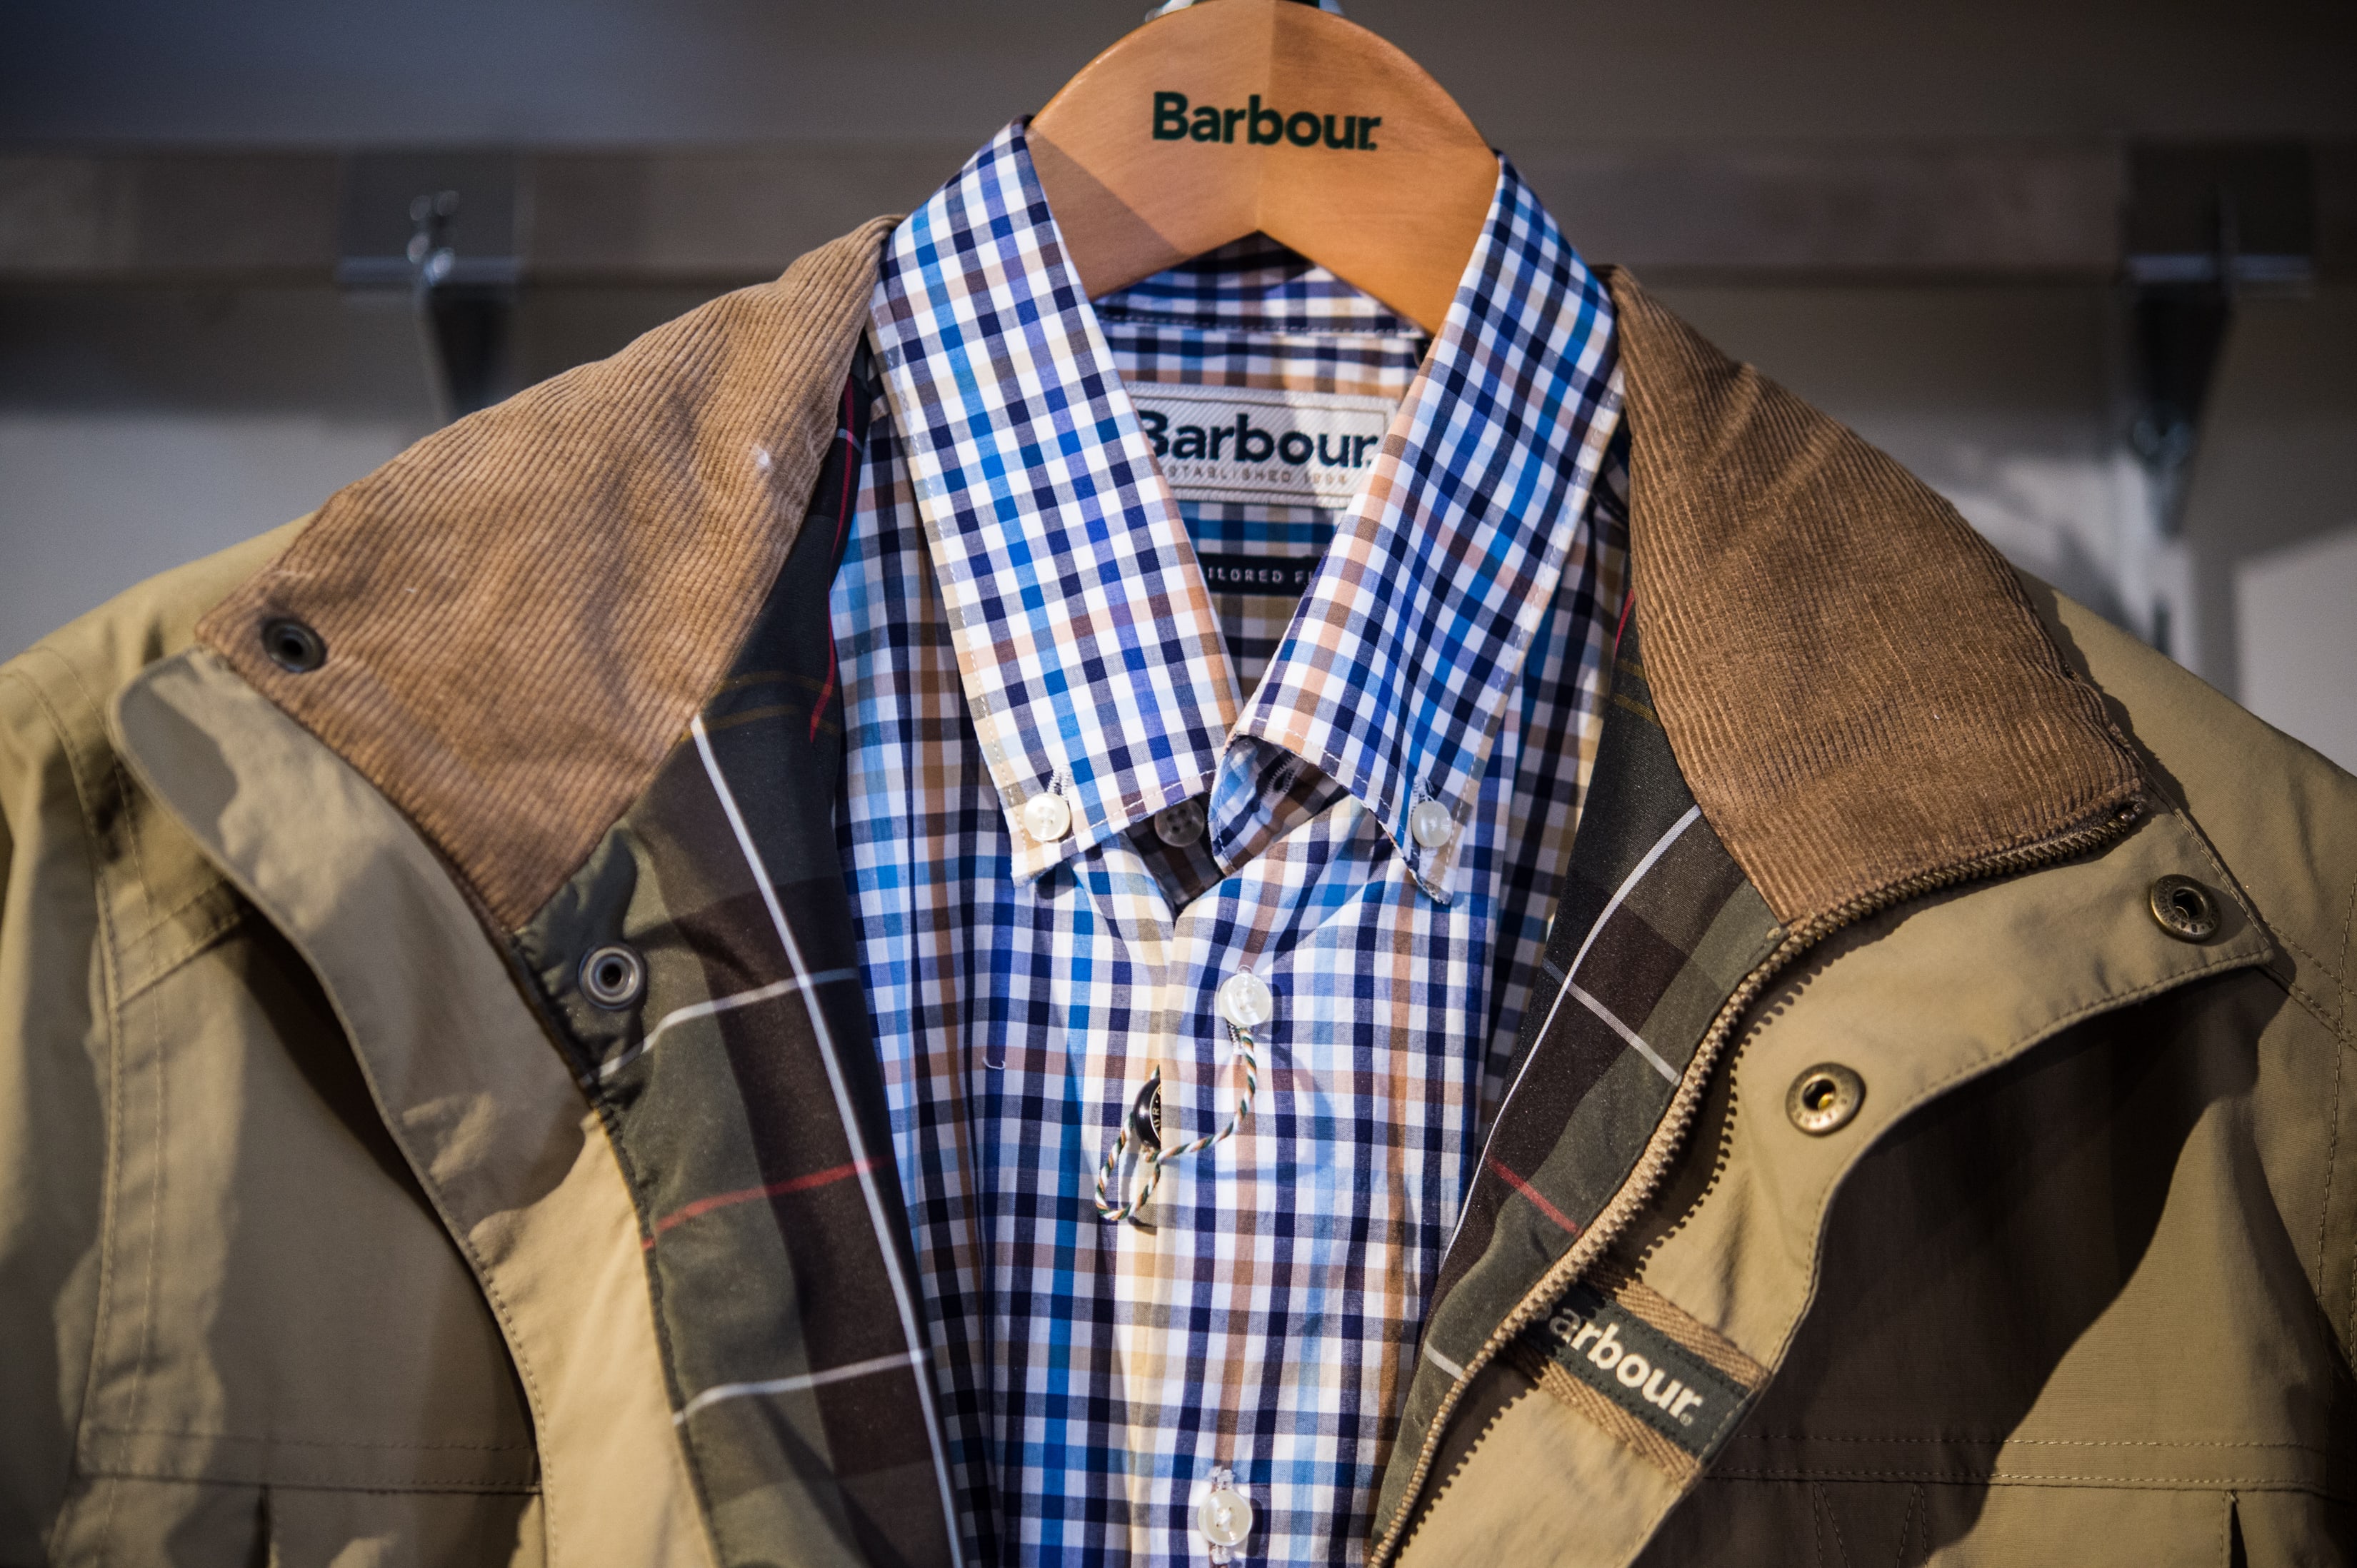 Heerlijk Sleutel worst Barbour | A British clothing store